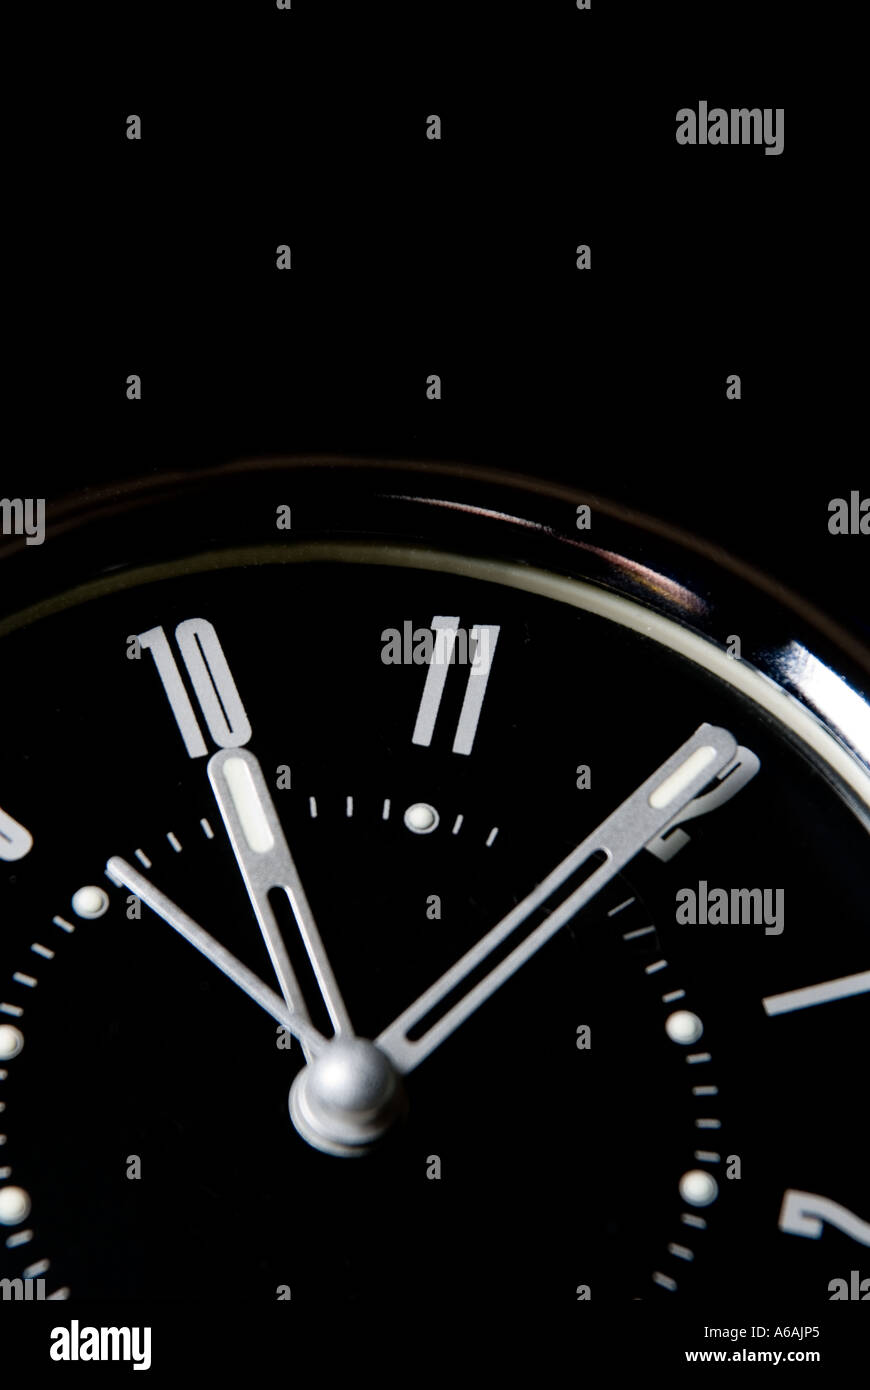 Alarm clock set at ten o clock Stock Photo - Alamy